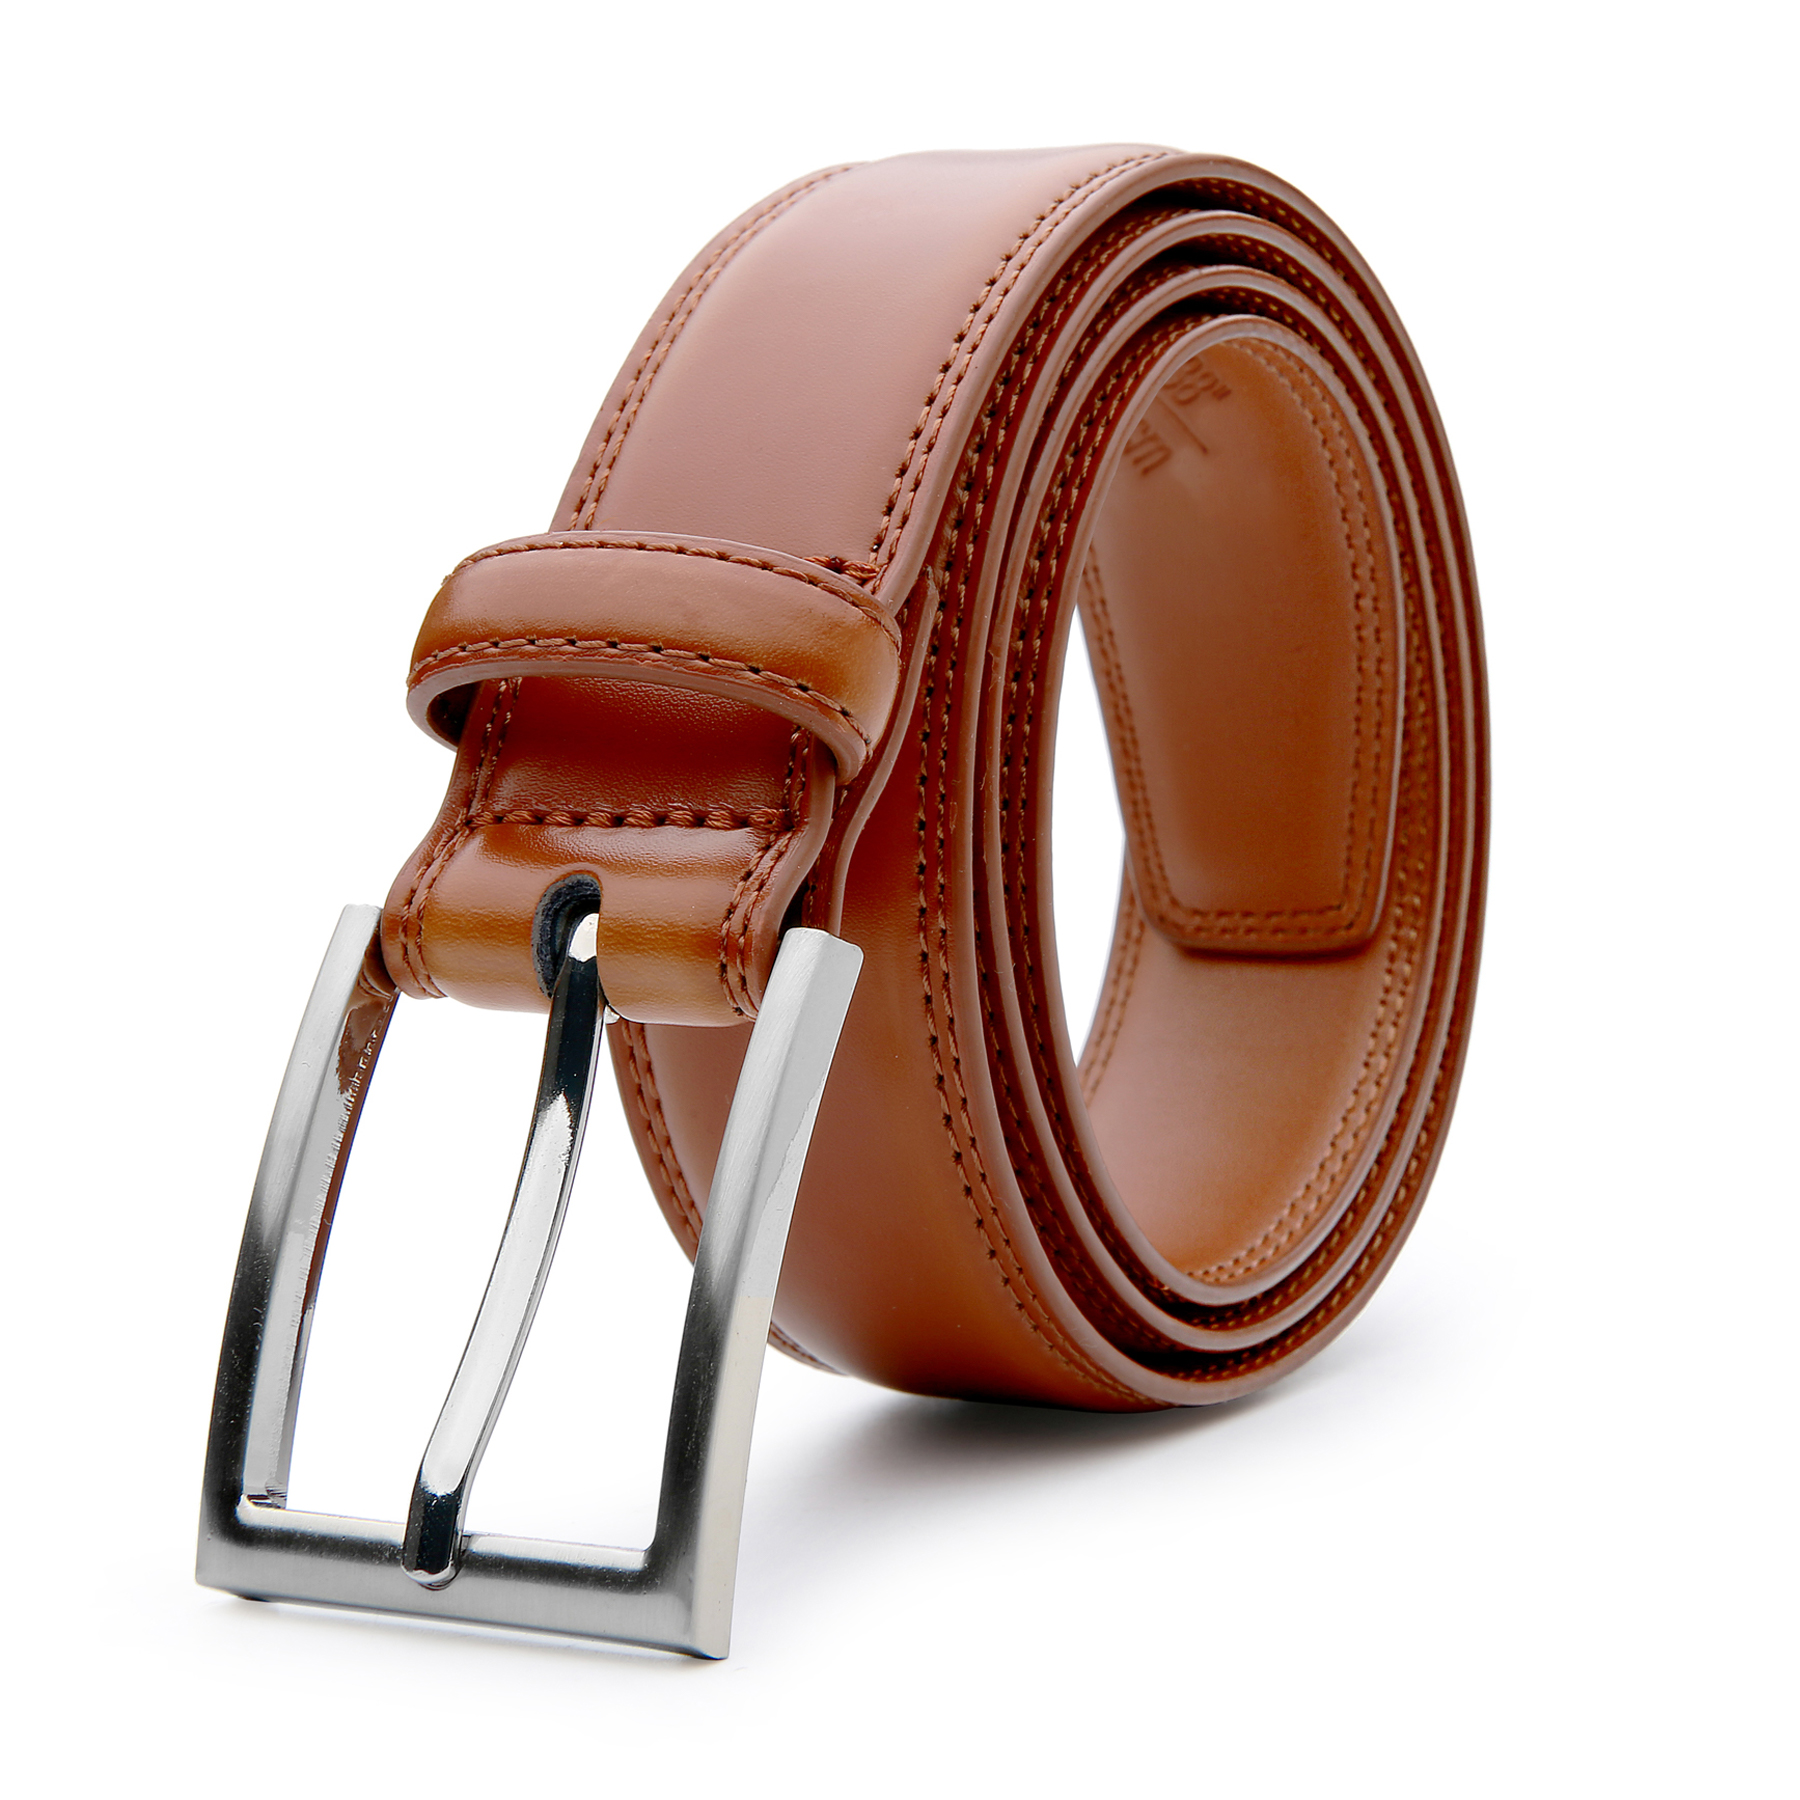 Cinturón clásico de vestir marca Solohombre - Solohombre